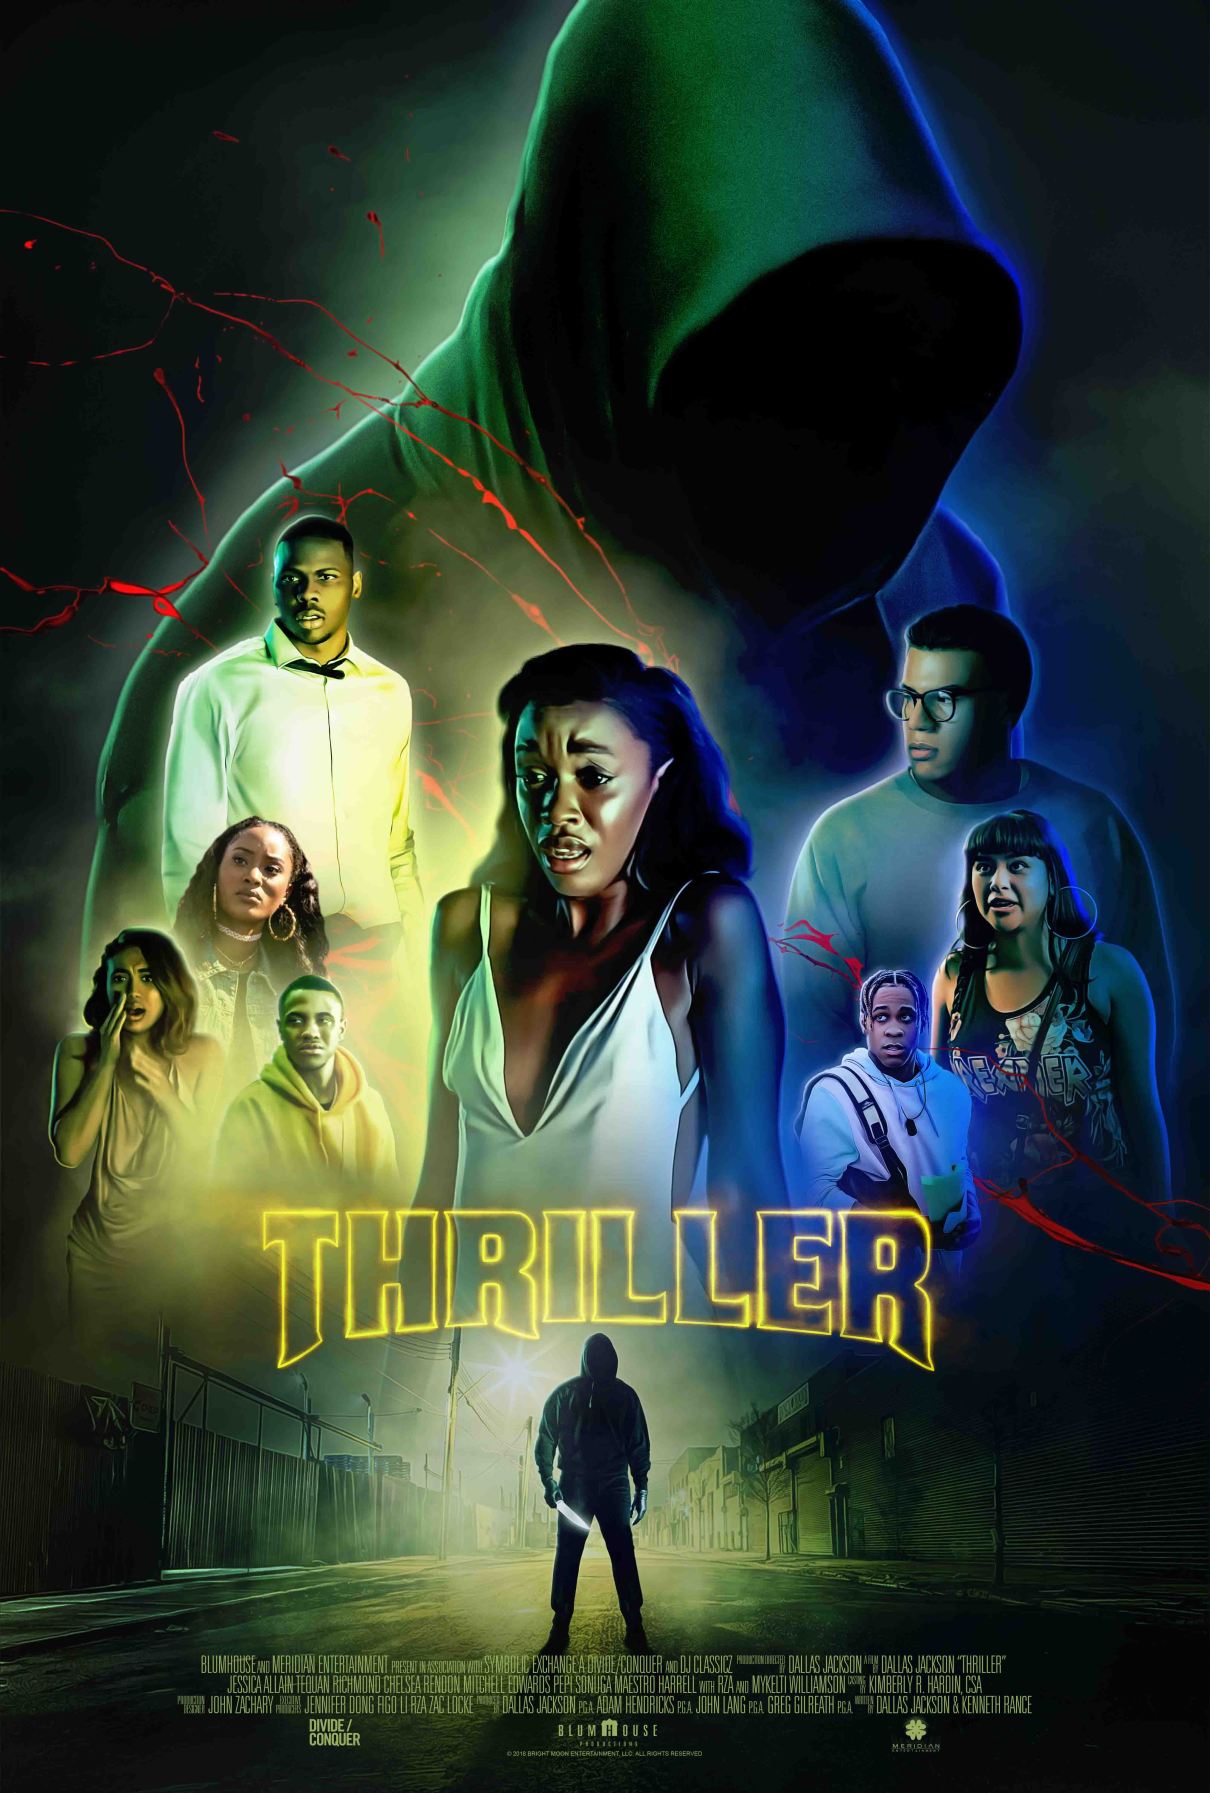 Nonton film Thriller layarkaca21 indoxx1 ganool online streaming terbaru